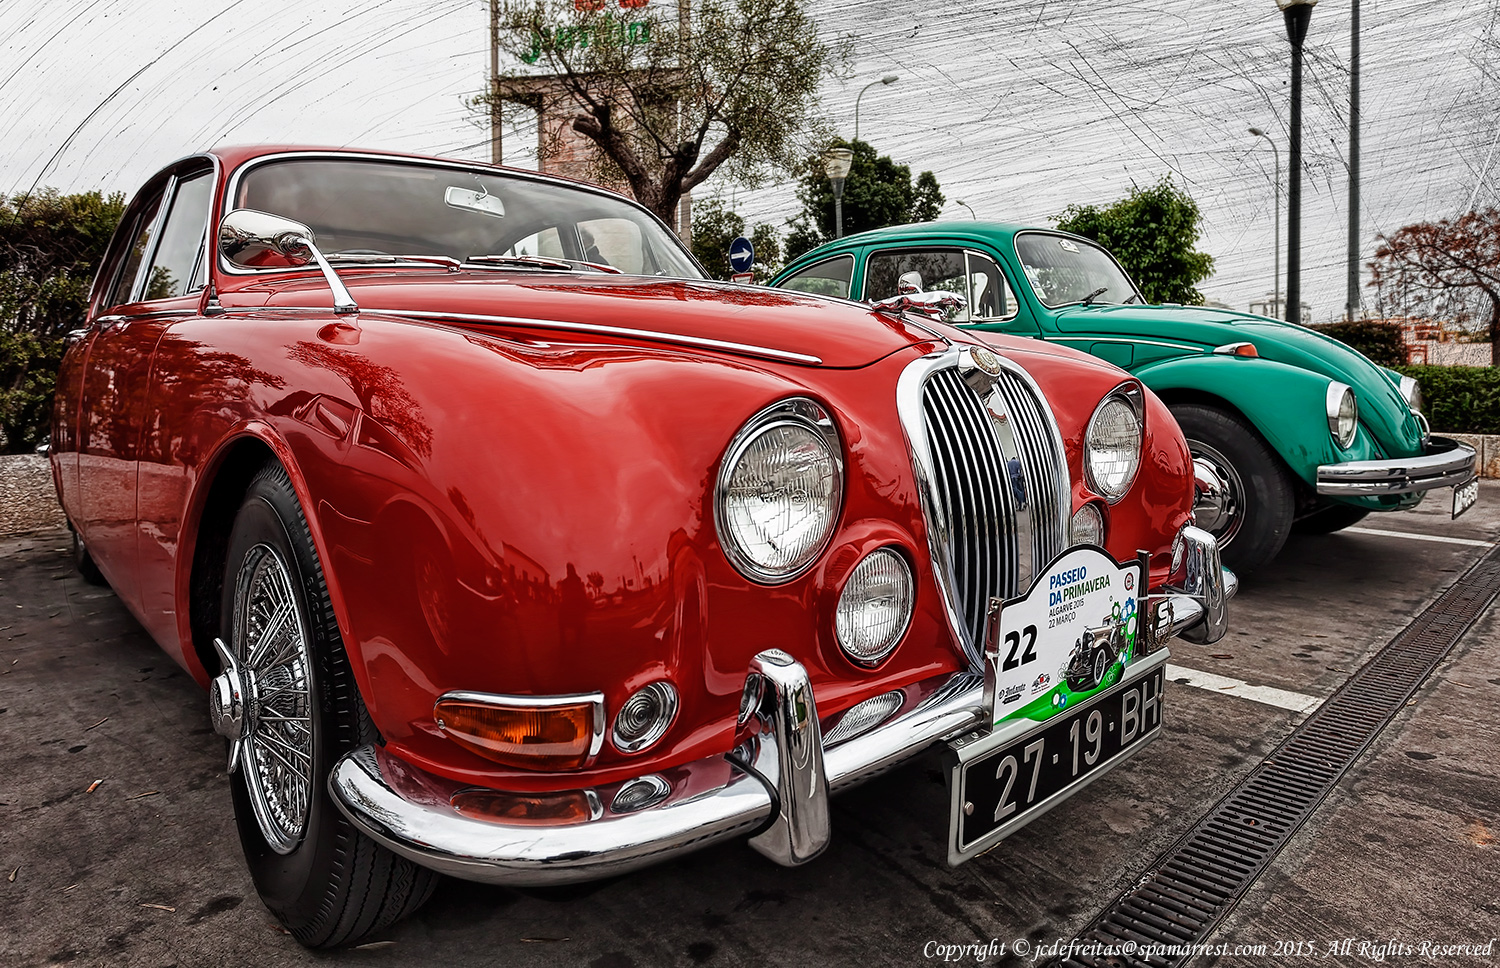 2015 - Jaguar - Passeio da Primavera, Vintage Cars Rally - Faro, Algarve - Portugal